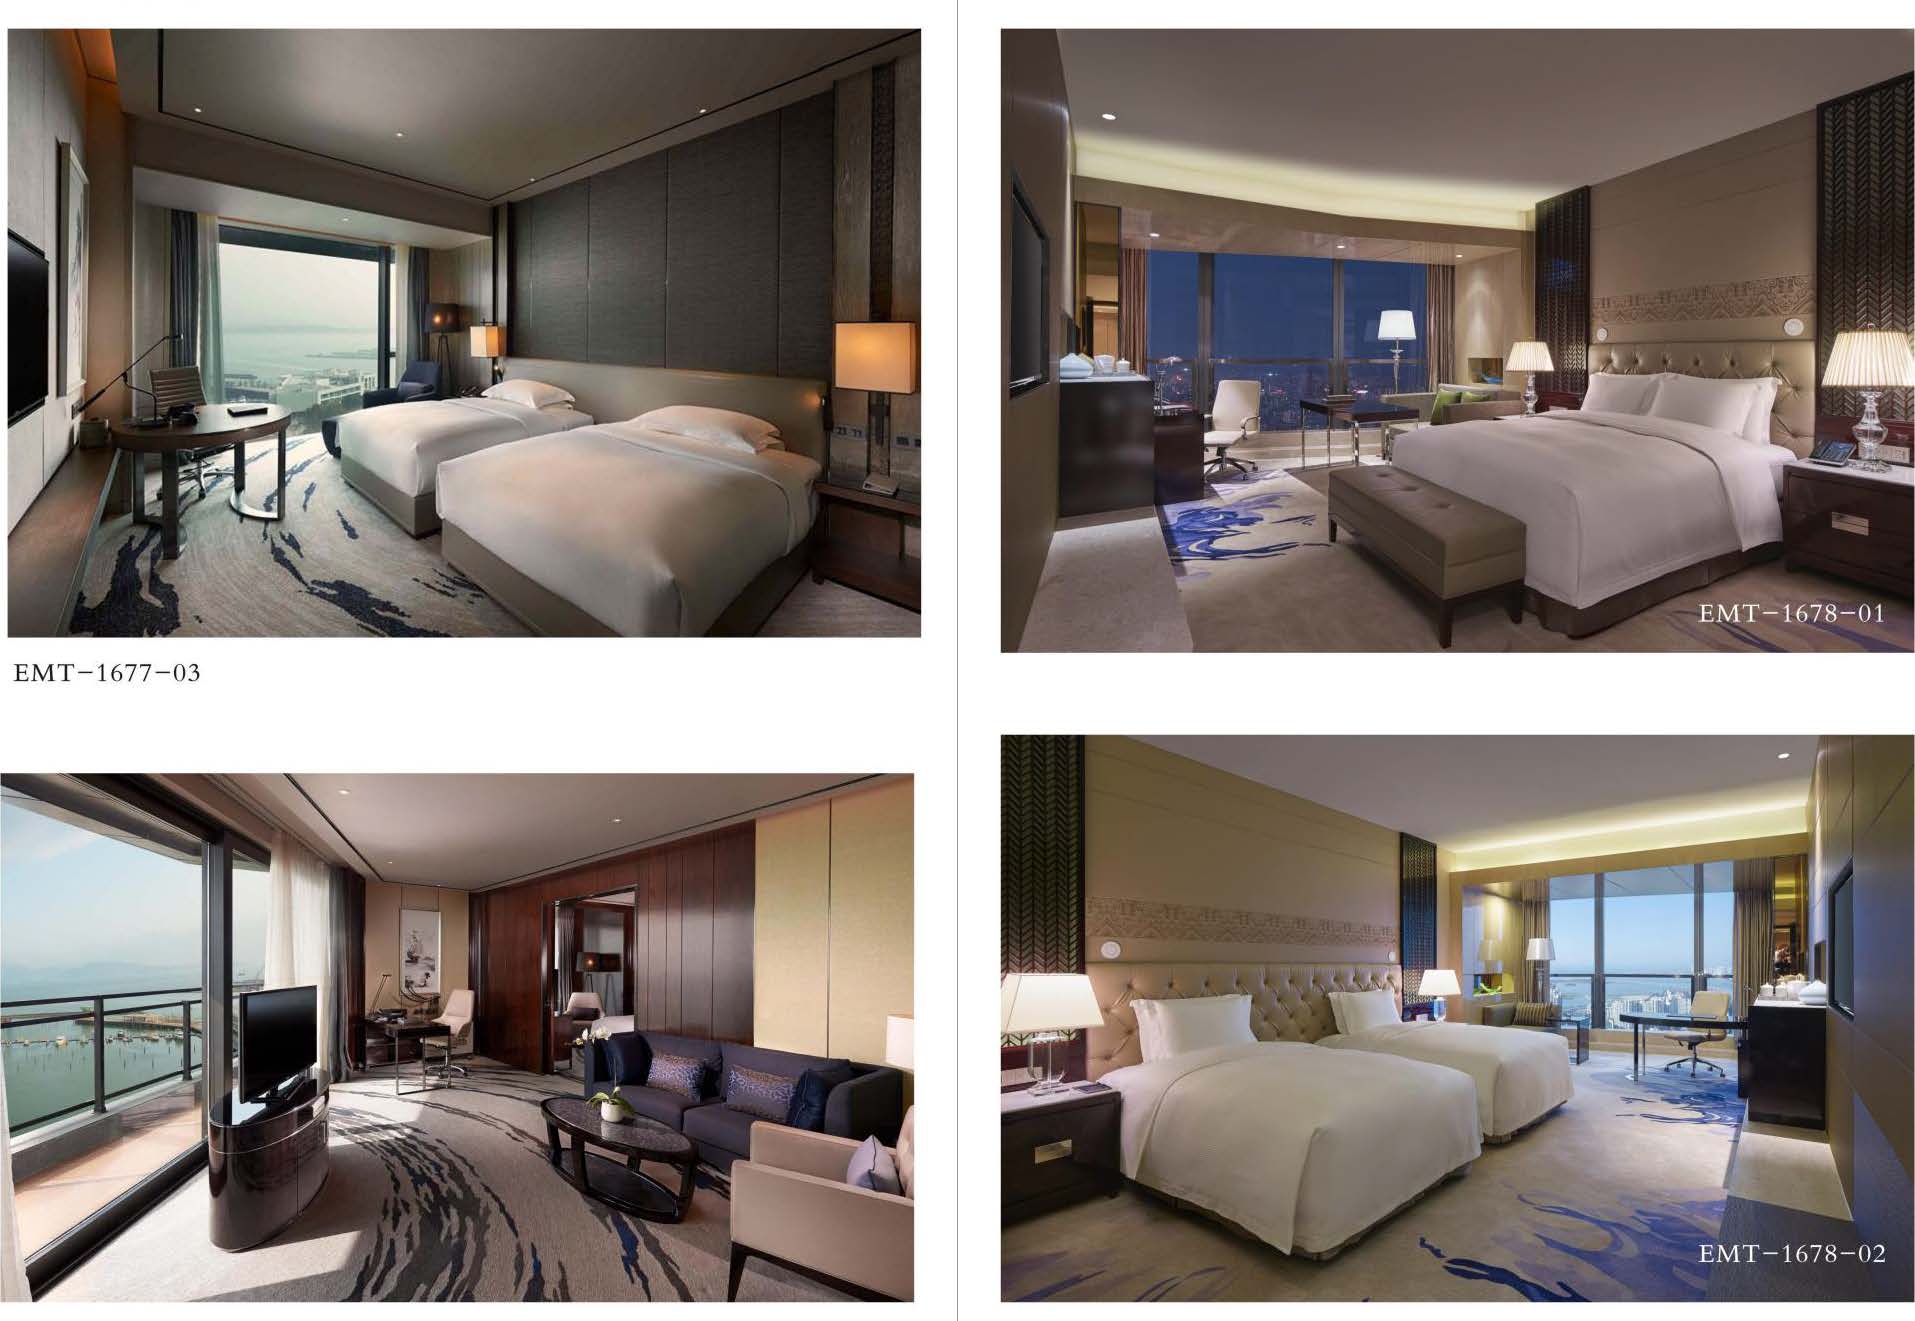 Hotel Bedroom Furniture Design